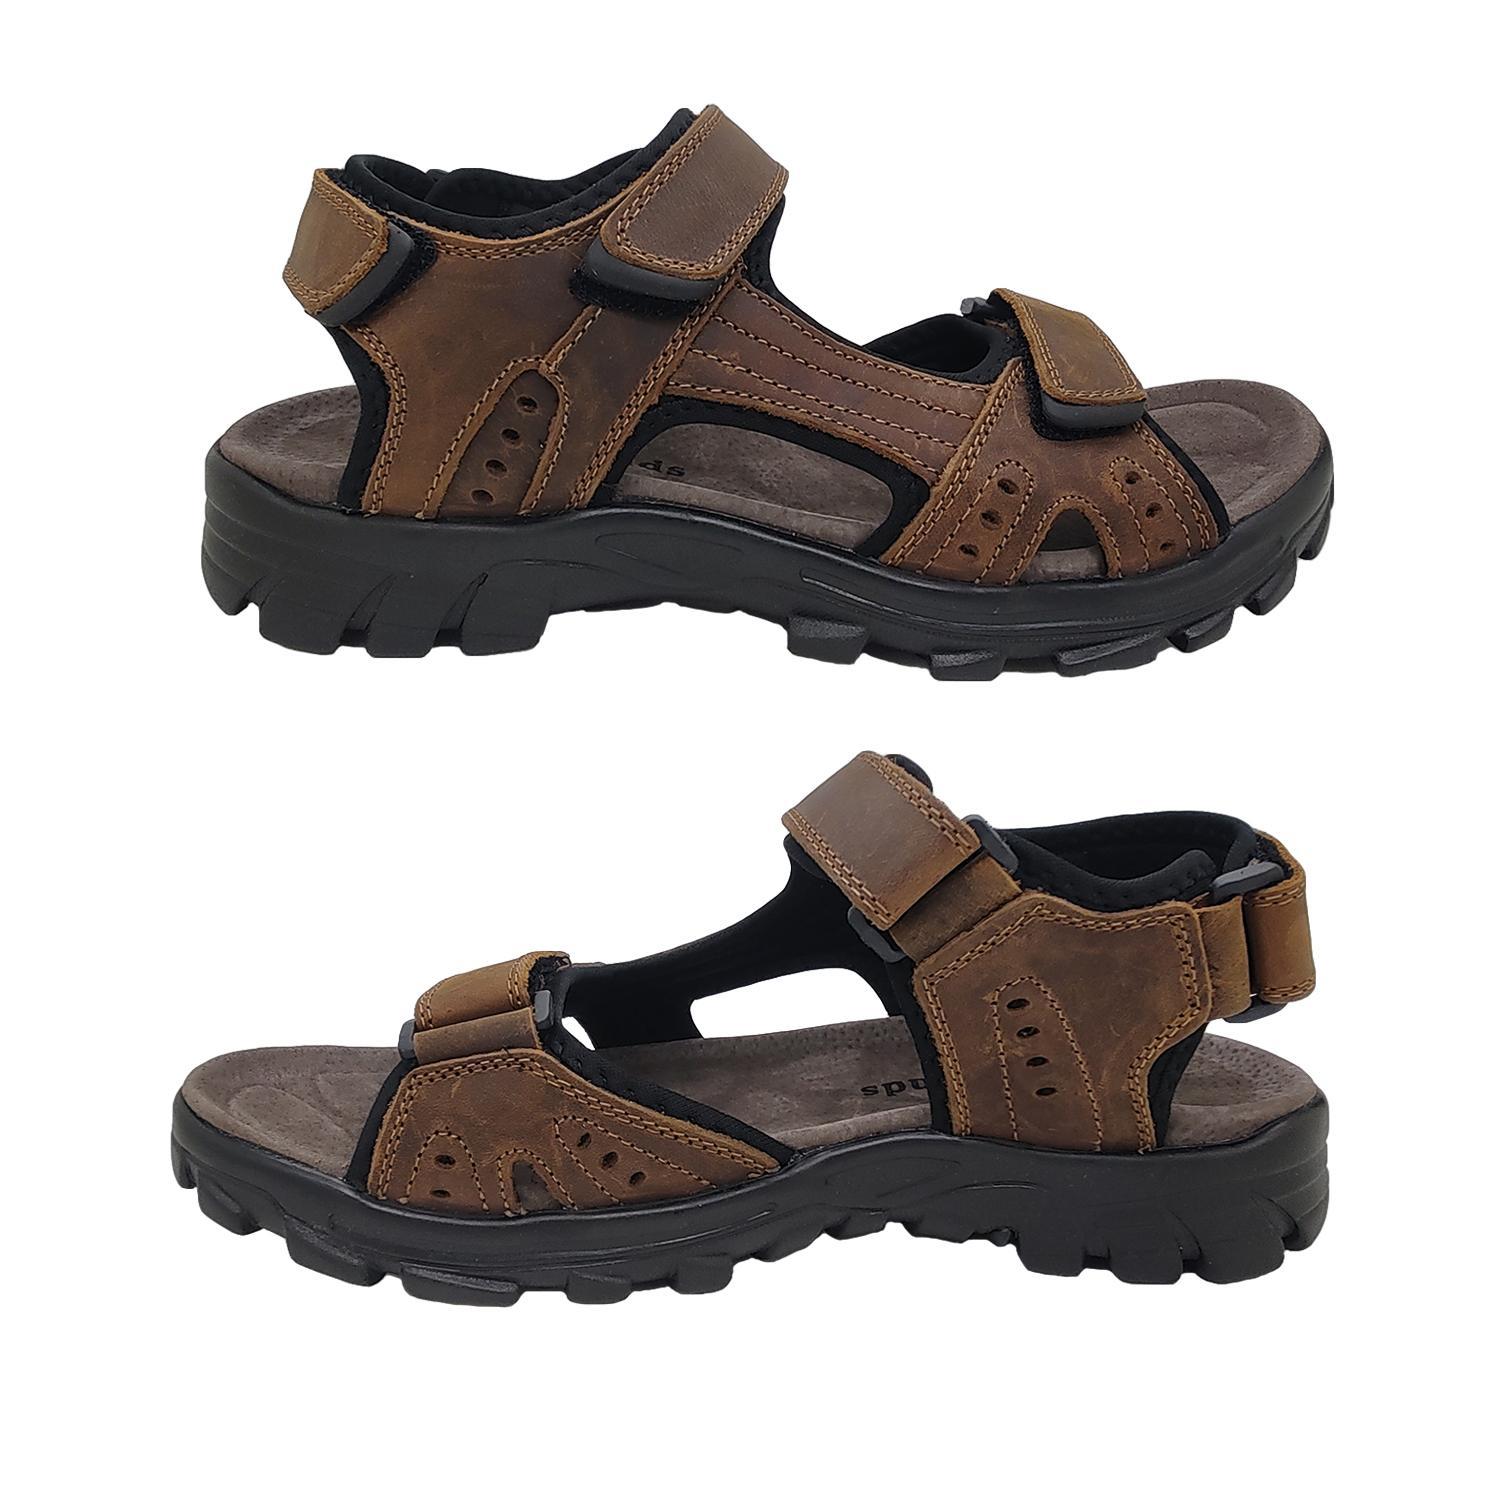 Woodlands Enrique Mens Sandals Leather Upper Multi Adjust Surf Style Comfort-Brown-10